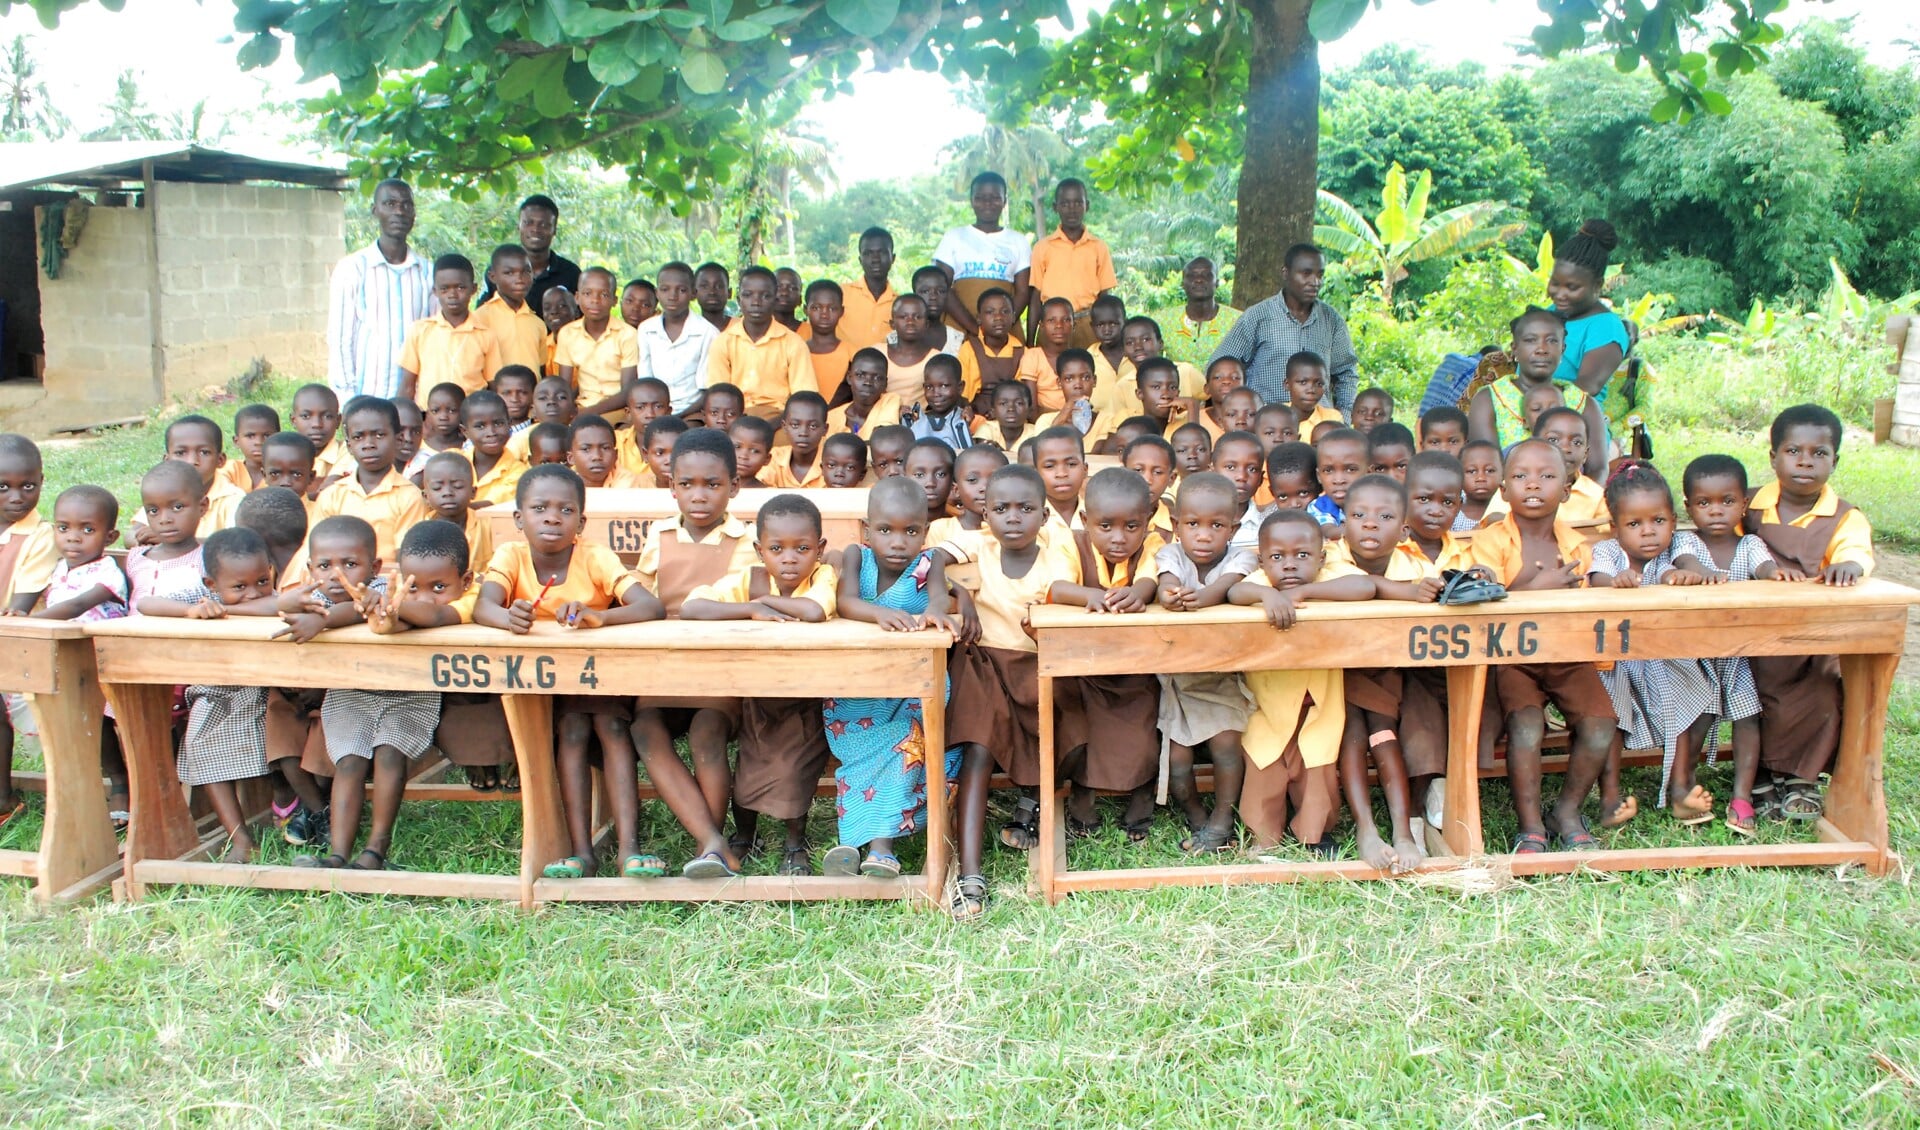 Nieuw meubilair voor de schoolkinderen in Ghana.